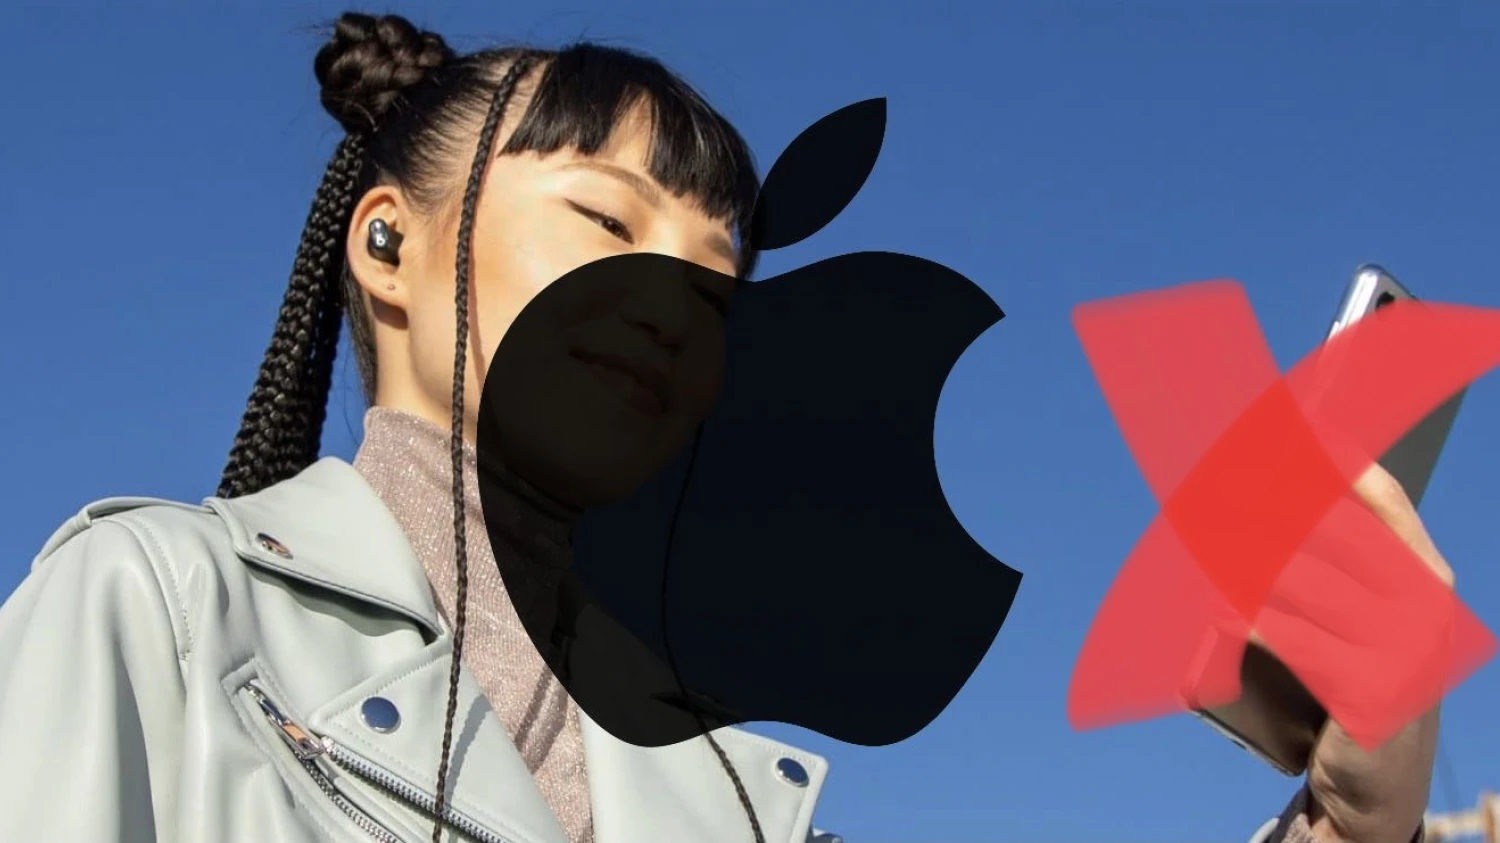 اپل گوشی گلکسی S21 را از تصویر تبلیغاتی Beats Studio Buds حذف کرد!